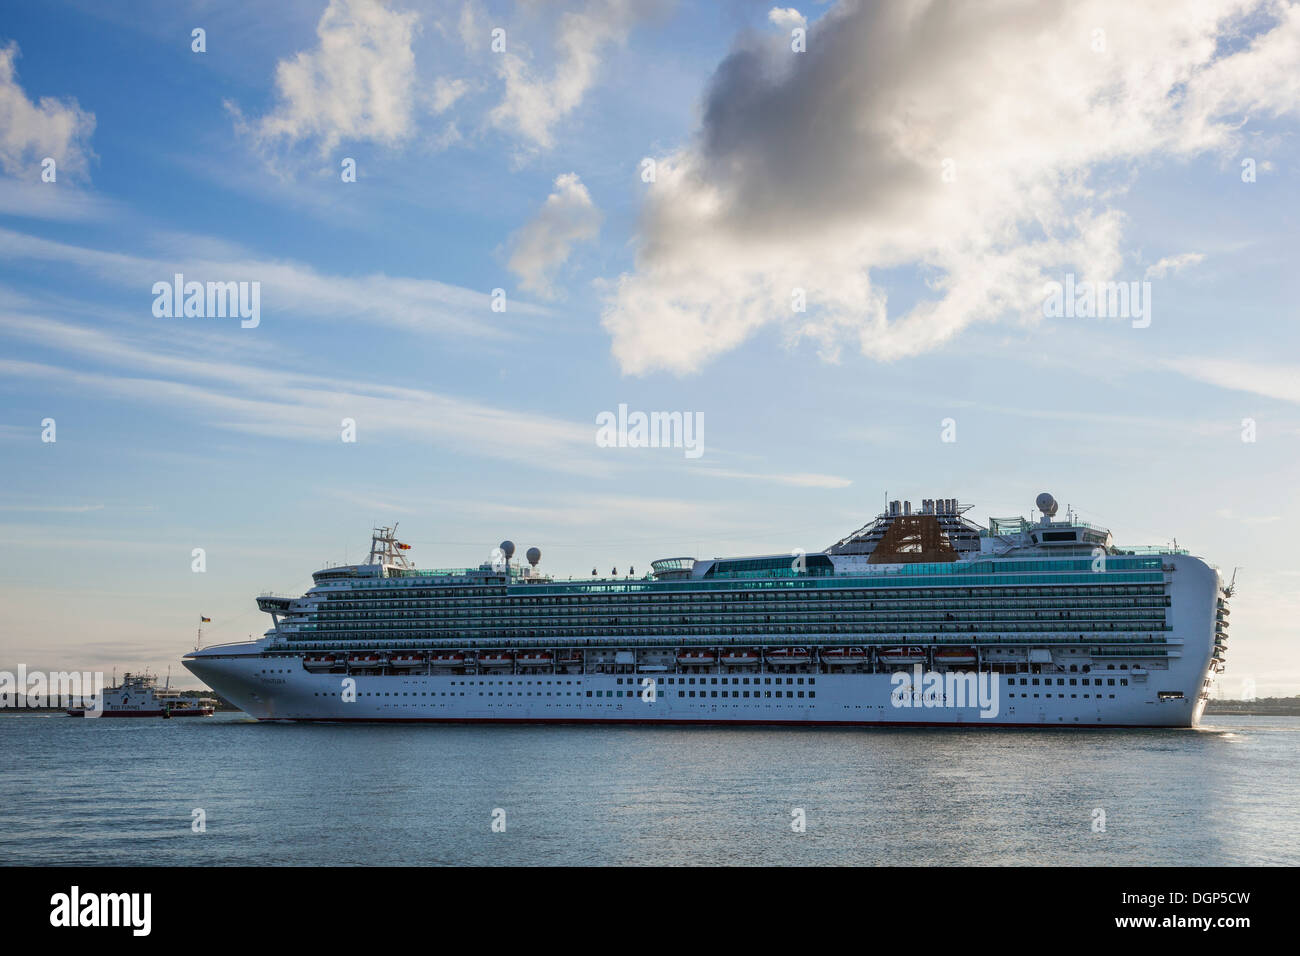 England, Hampshire, P&O Cruise Ship 'Ventura' Entering Southampton Harbour Stock Photo